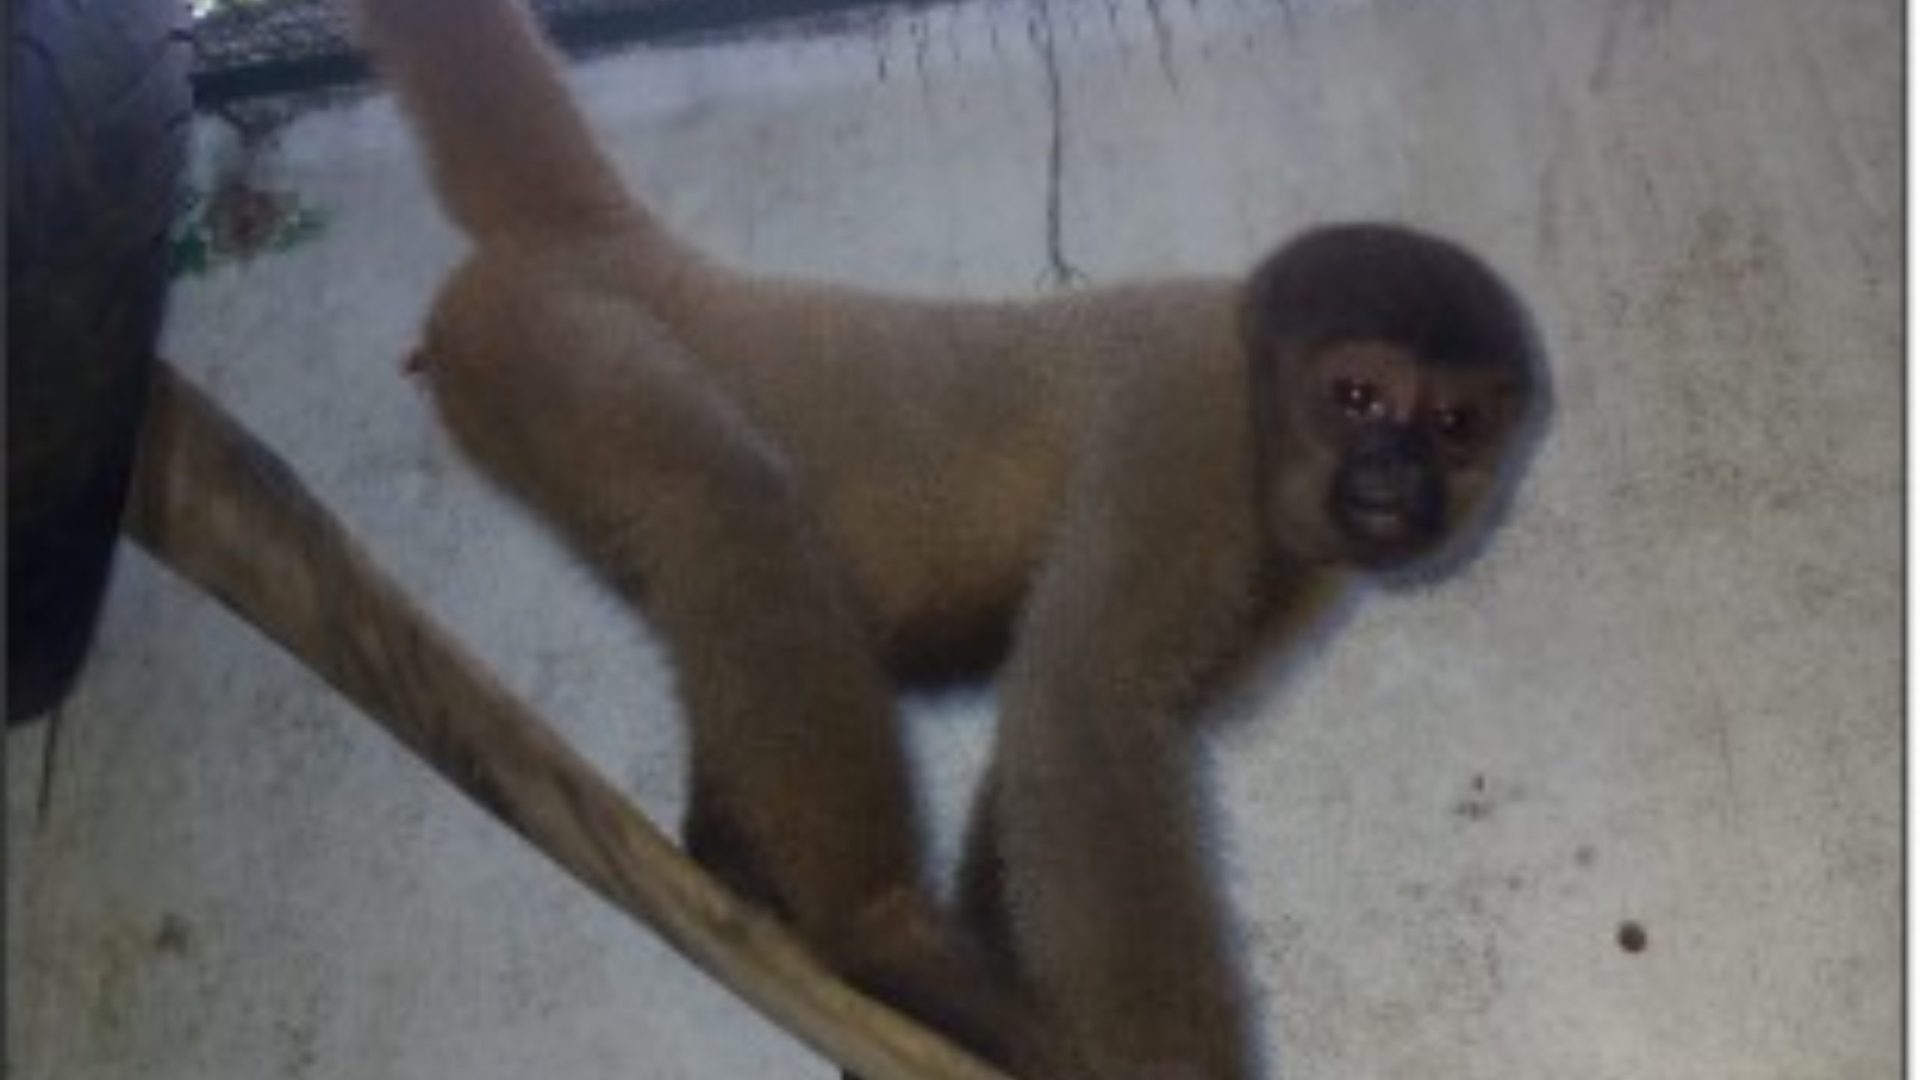 Primatas eram domesticados ilegalmente receberam cuidados e passaram por exames veterinários no CETAS/IBAMA de Manaus antes de serem encaminhados ao seu novo lar, o Parque Ecológico Municipal de São Carlos (SP) - Foto: Divulgação